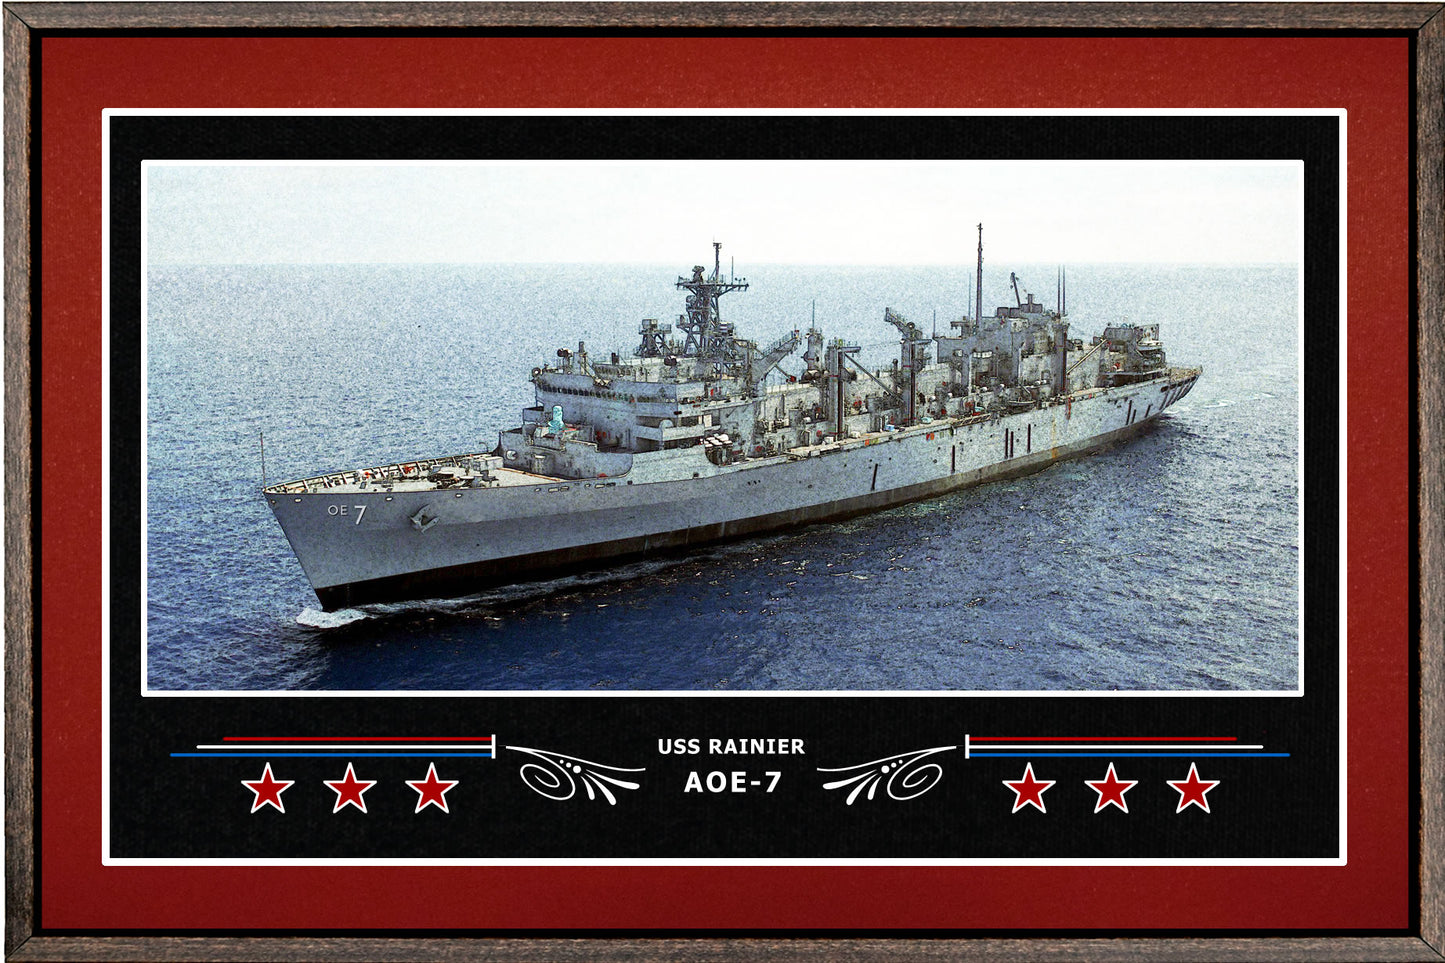 USS RAINIER AOE 7 BOX FRAMED CANVAS ART BURGUNDY